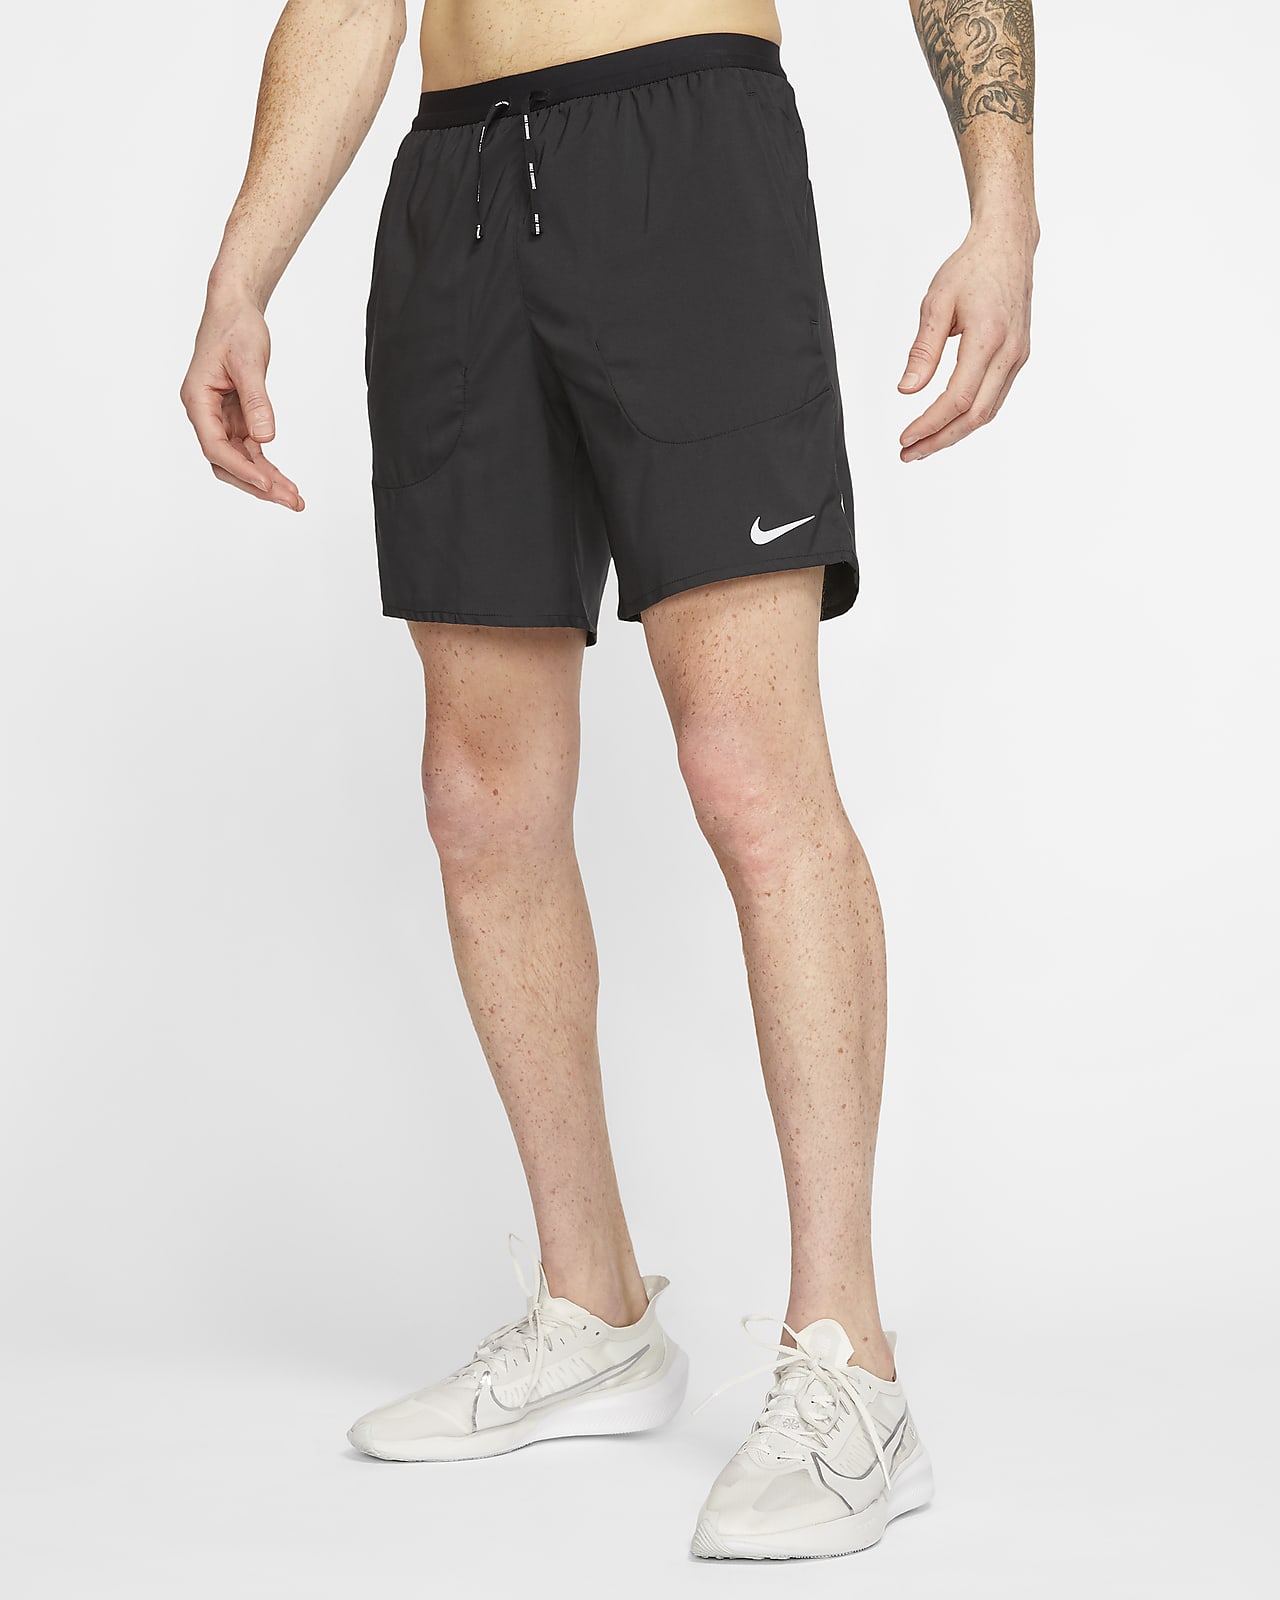 Shorts de running con malla interior para hombre Nike Flex Stride. Nike.com